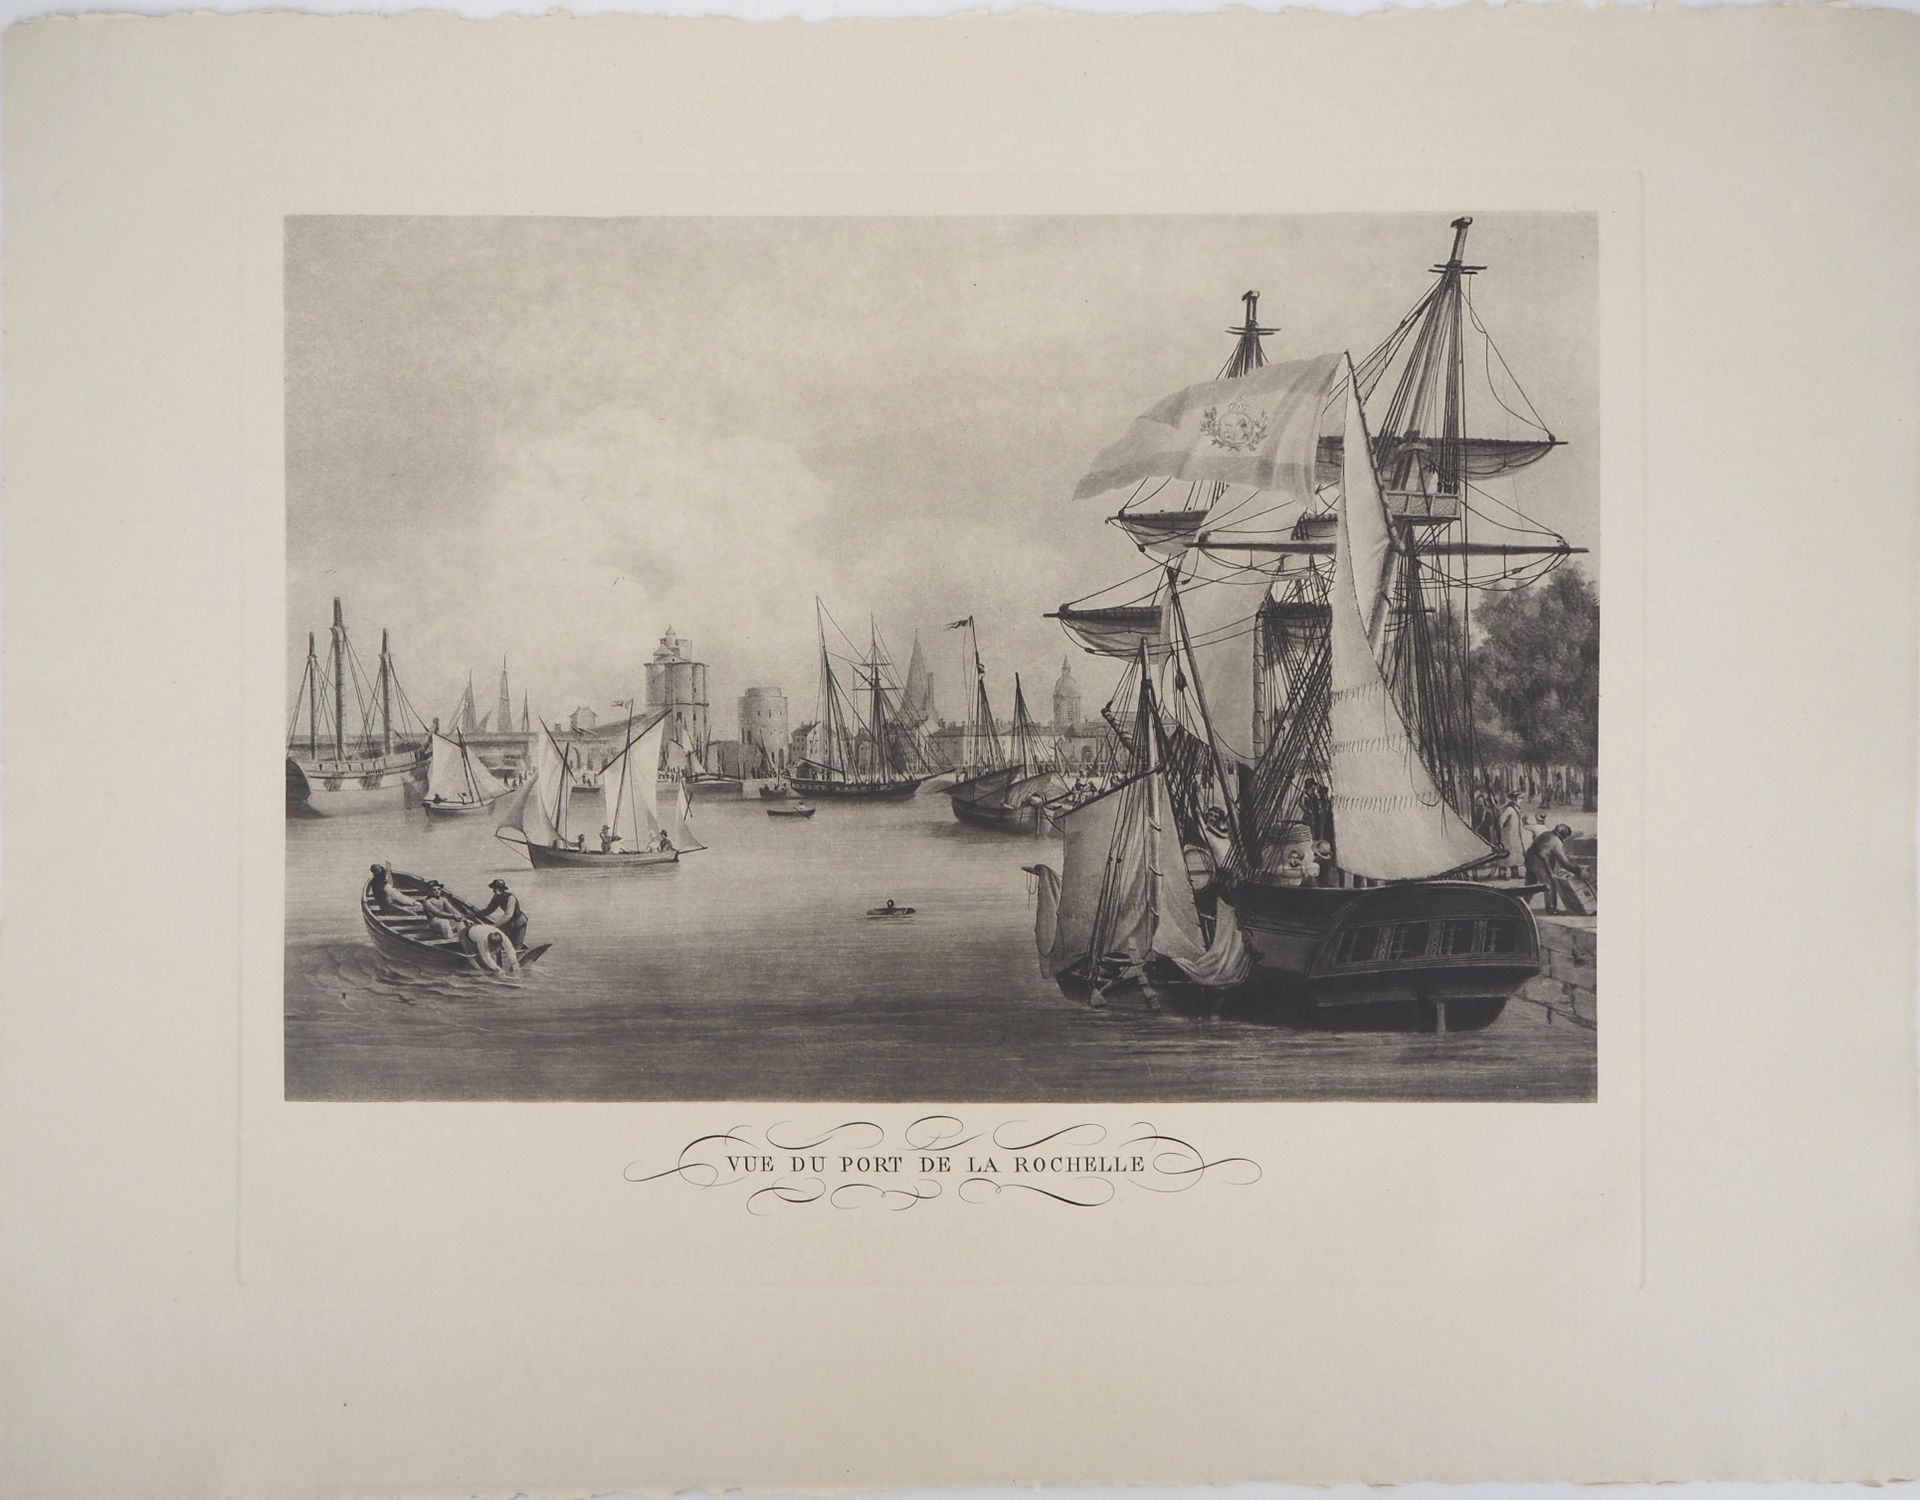 ANONYME 佚名

拉罗谢尔港的景色

原始凹版印刷品

牛皮纸上 50 x 65.5

状况极佳